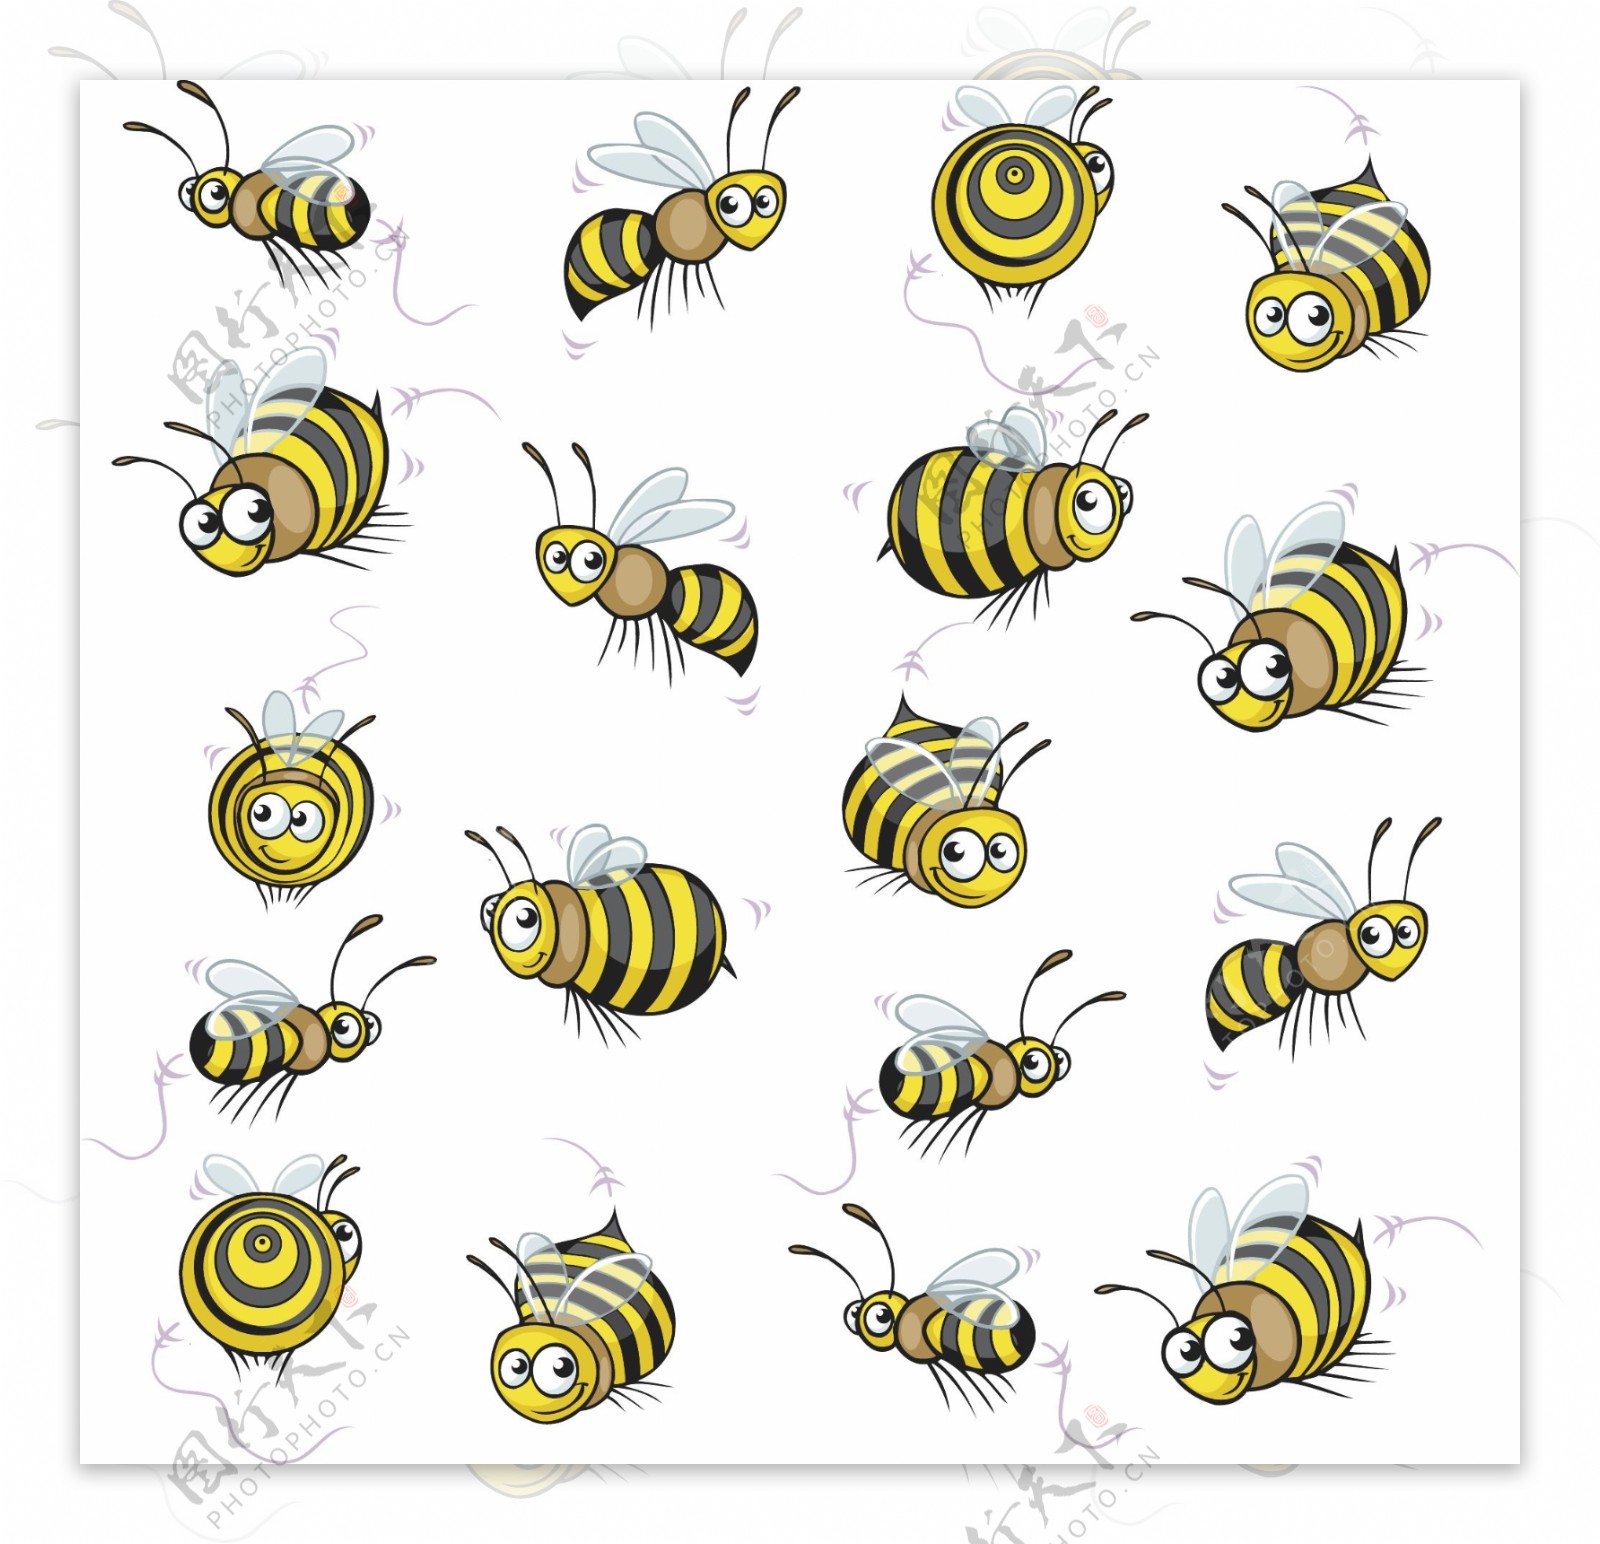 可爱卡通蜜蜂形象图片